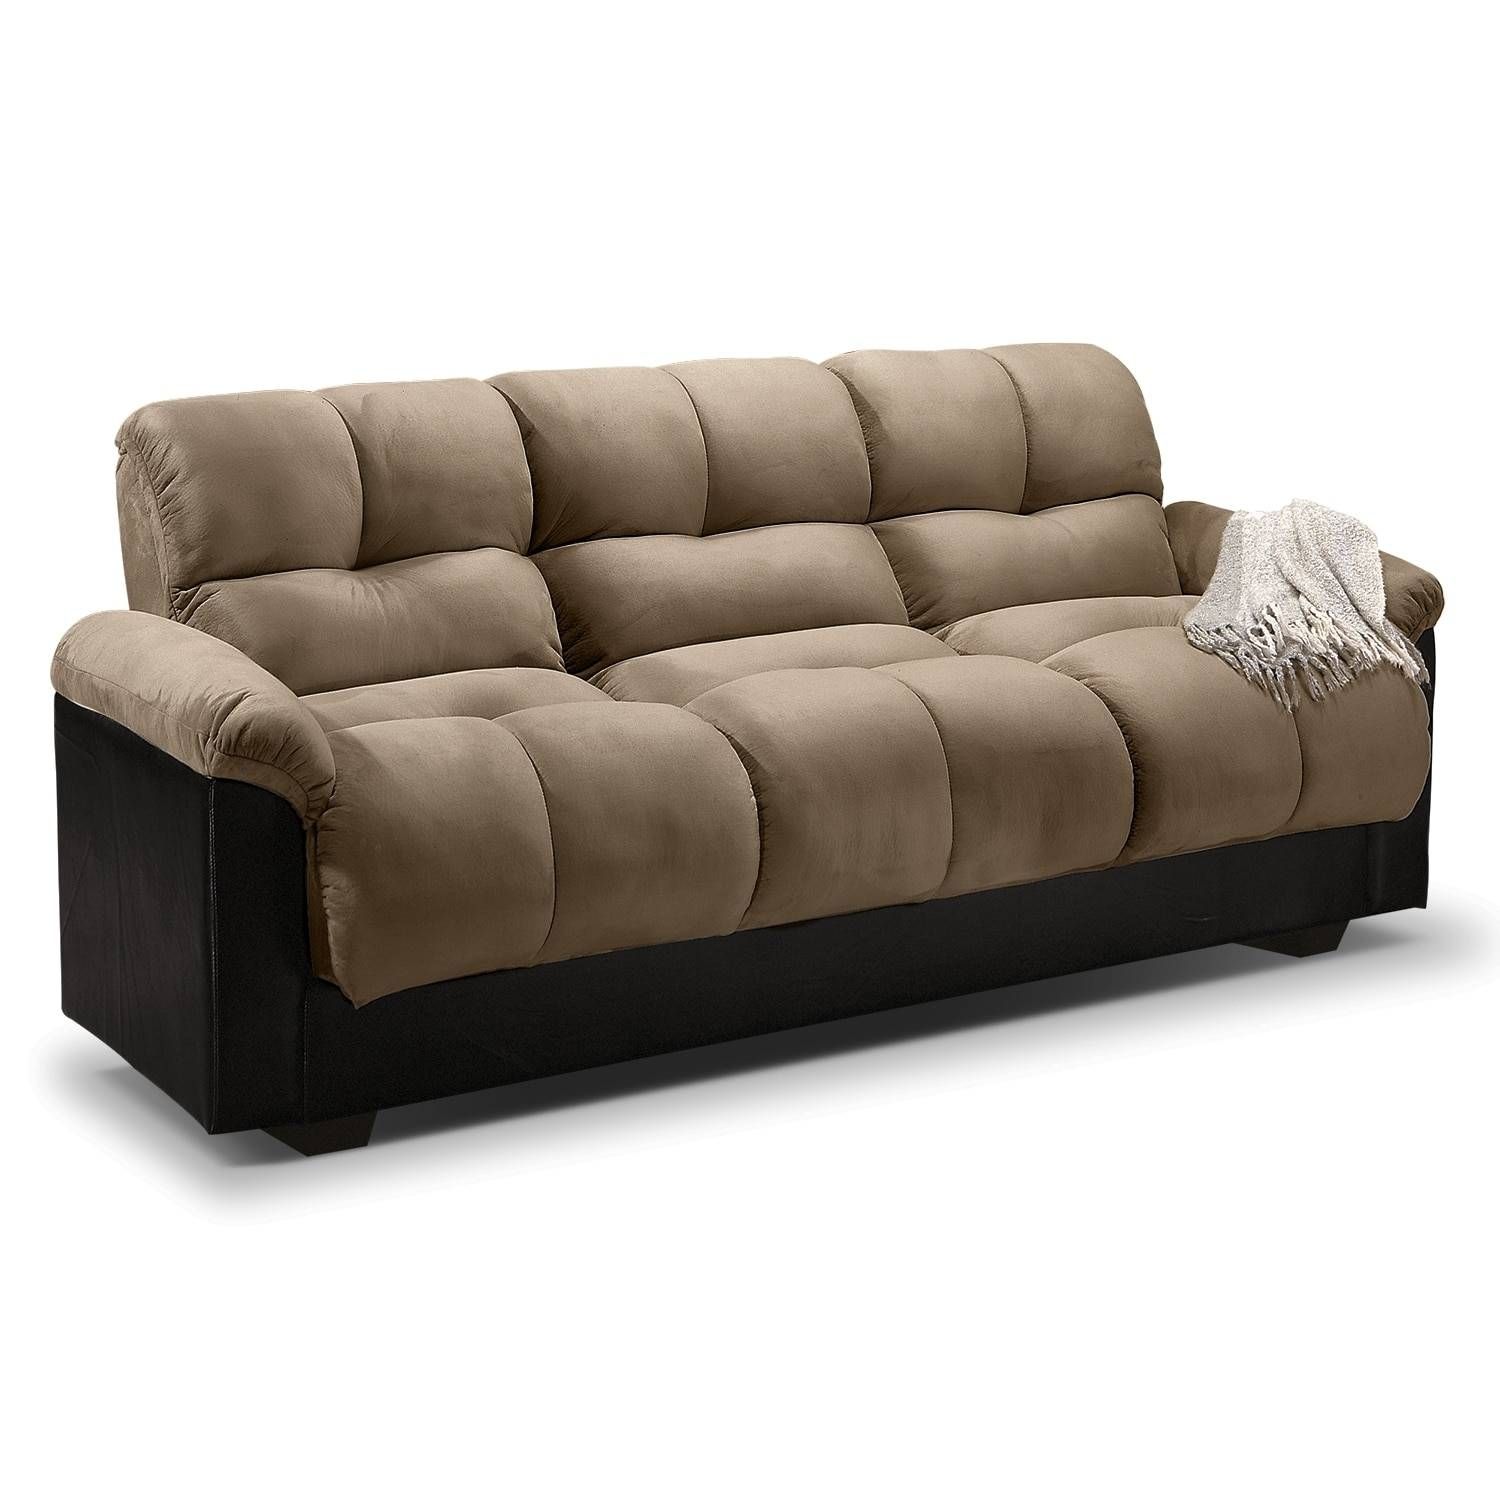 Ara Futon Sofa Bed With Storage – Hazelnut | Value City Furniture Within Fulton Sofa Beds (Photo 1 of 30)